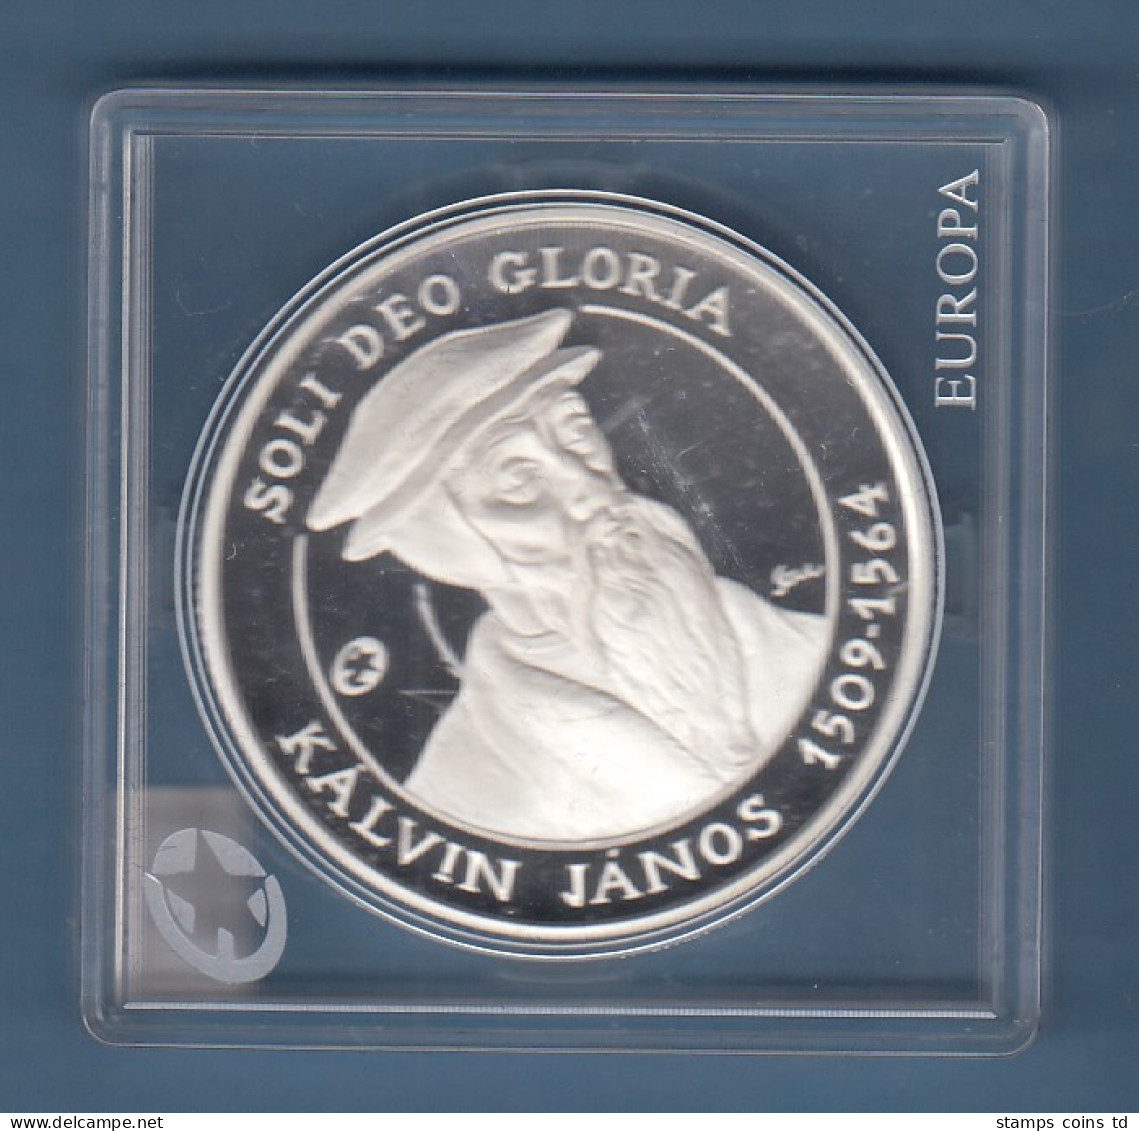 Ungarn 2009 Silber-Gedenmünze Kalvin Janos 5000 Forint PP  - Ungarn